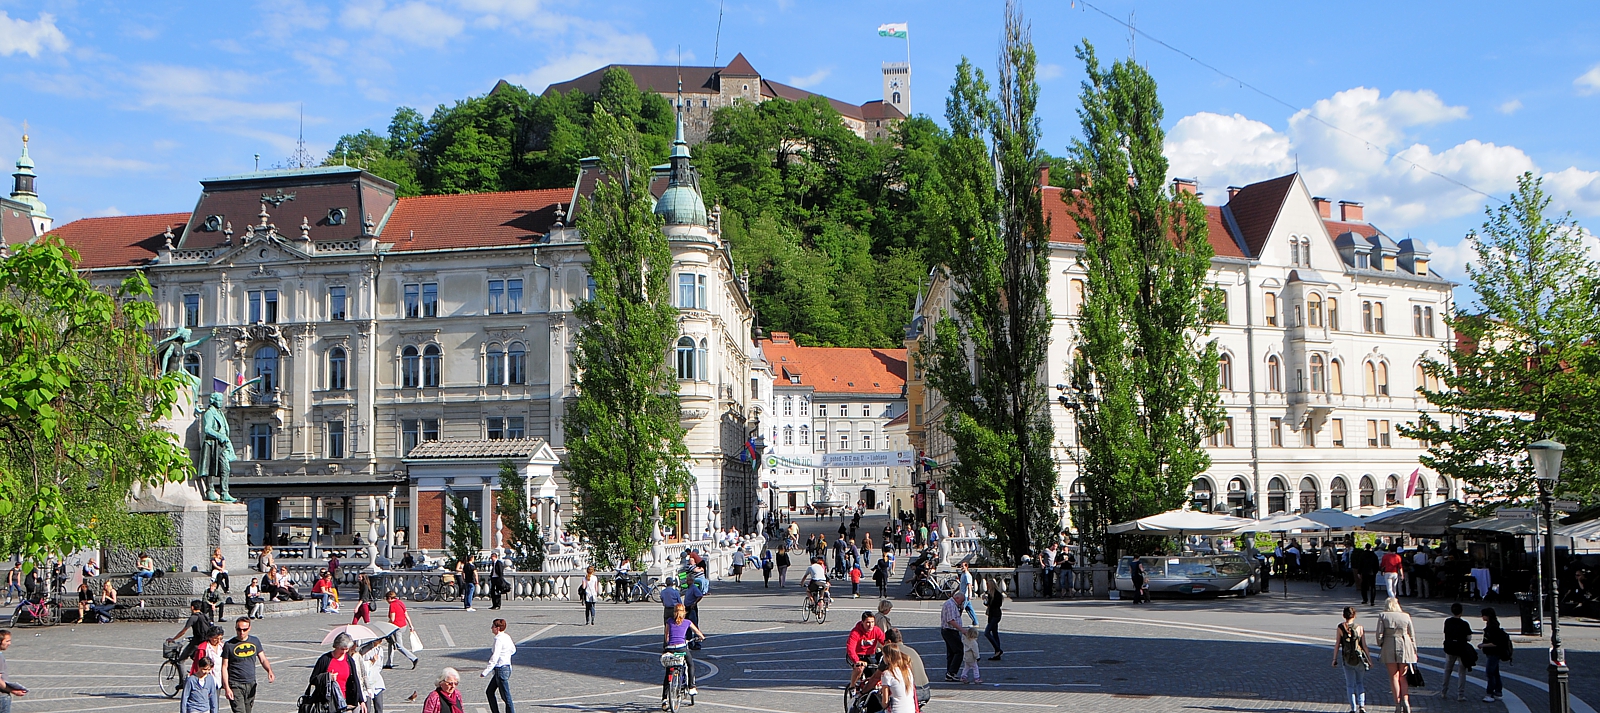 Ljubljana: Prešeren square